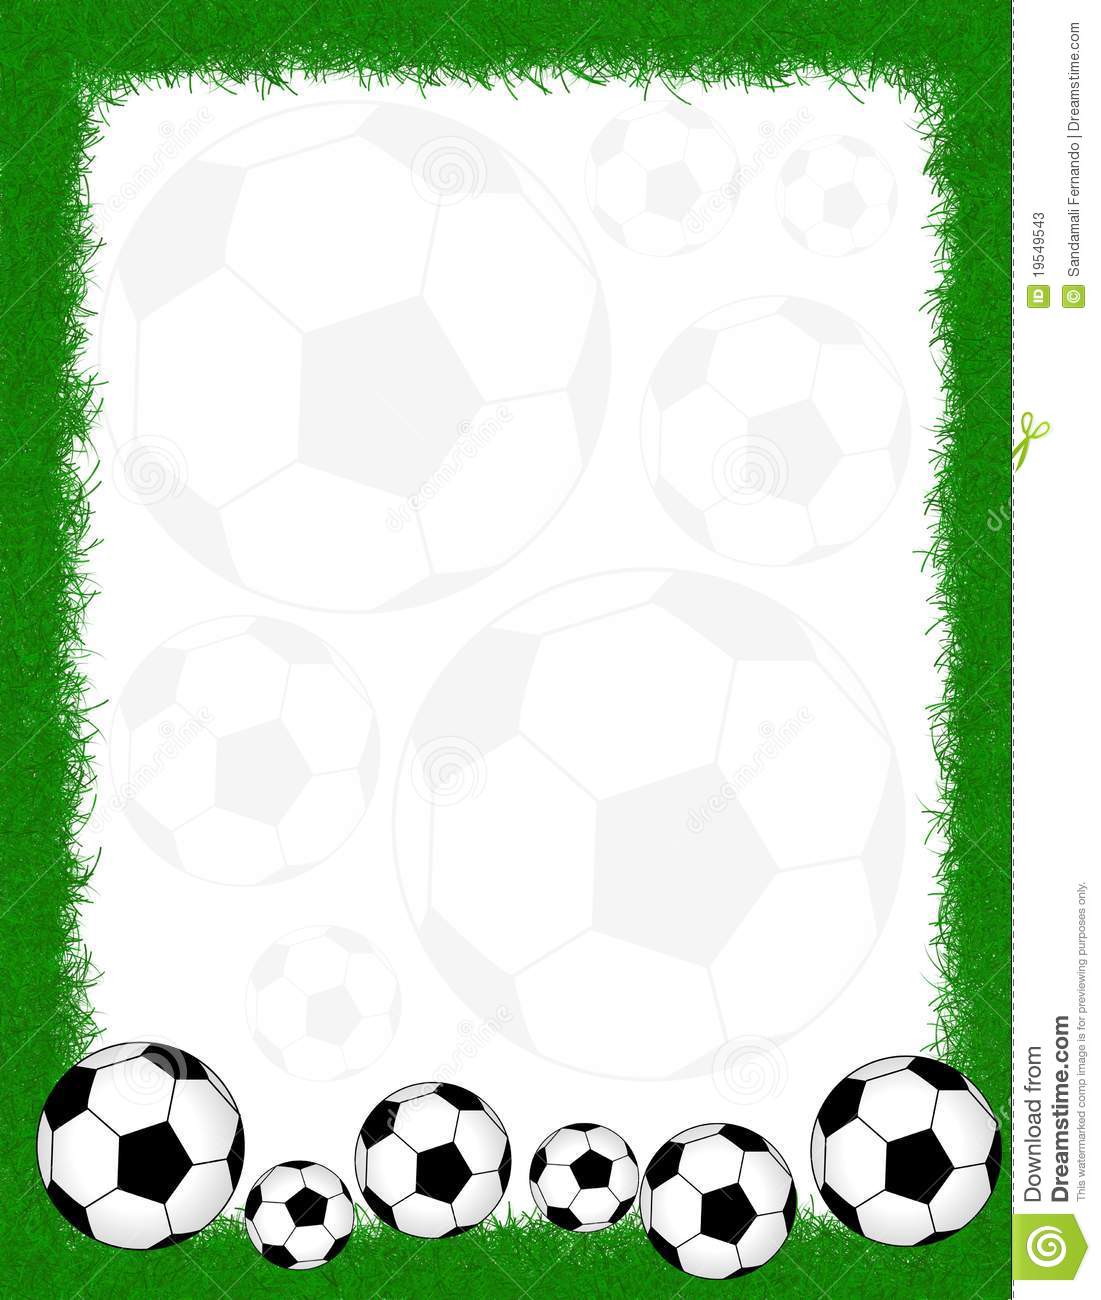 Soccer frame